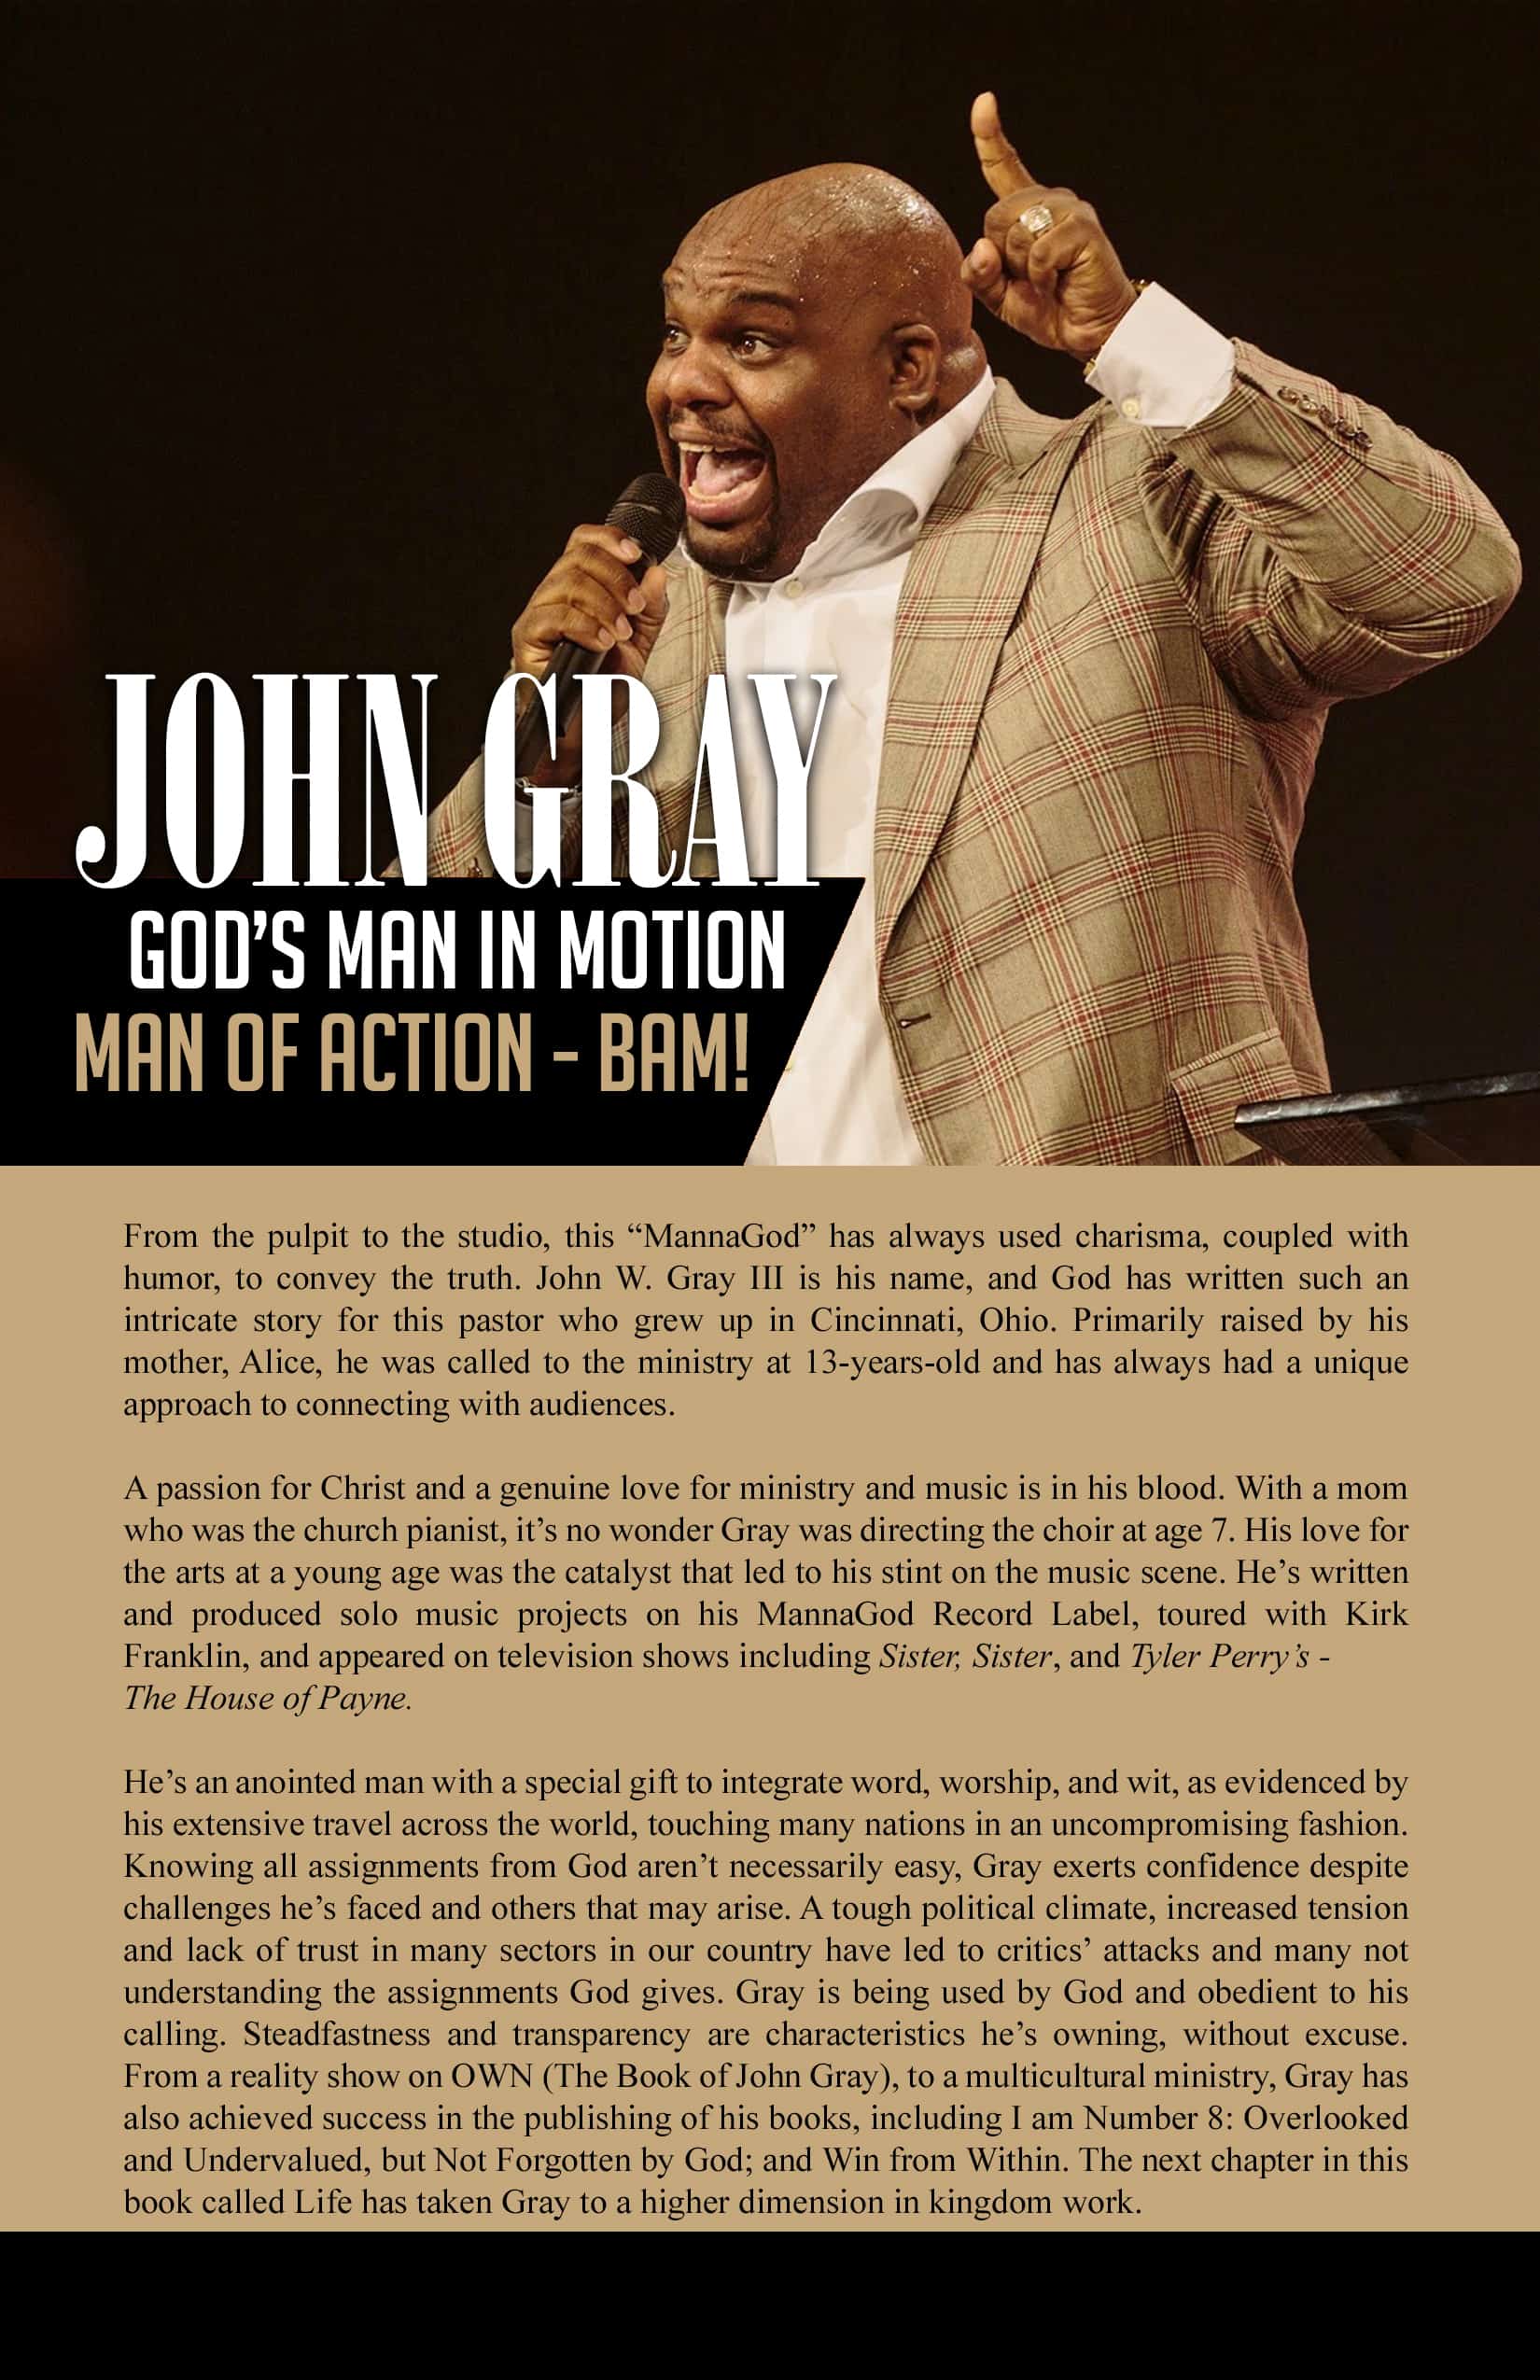 Pastor John Gray